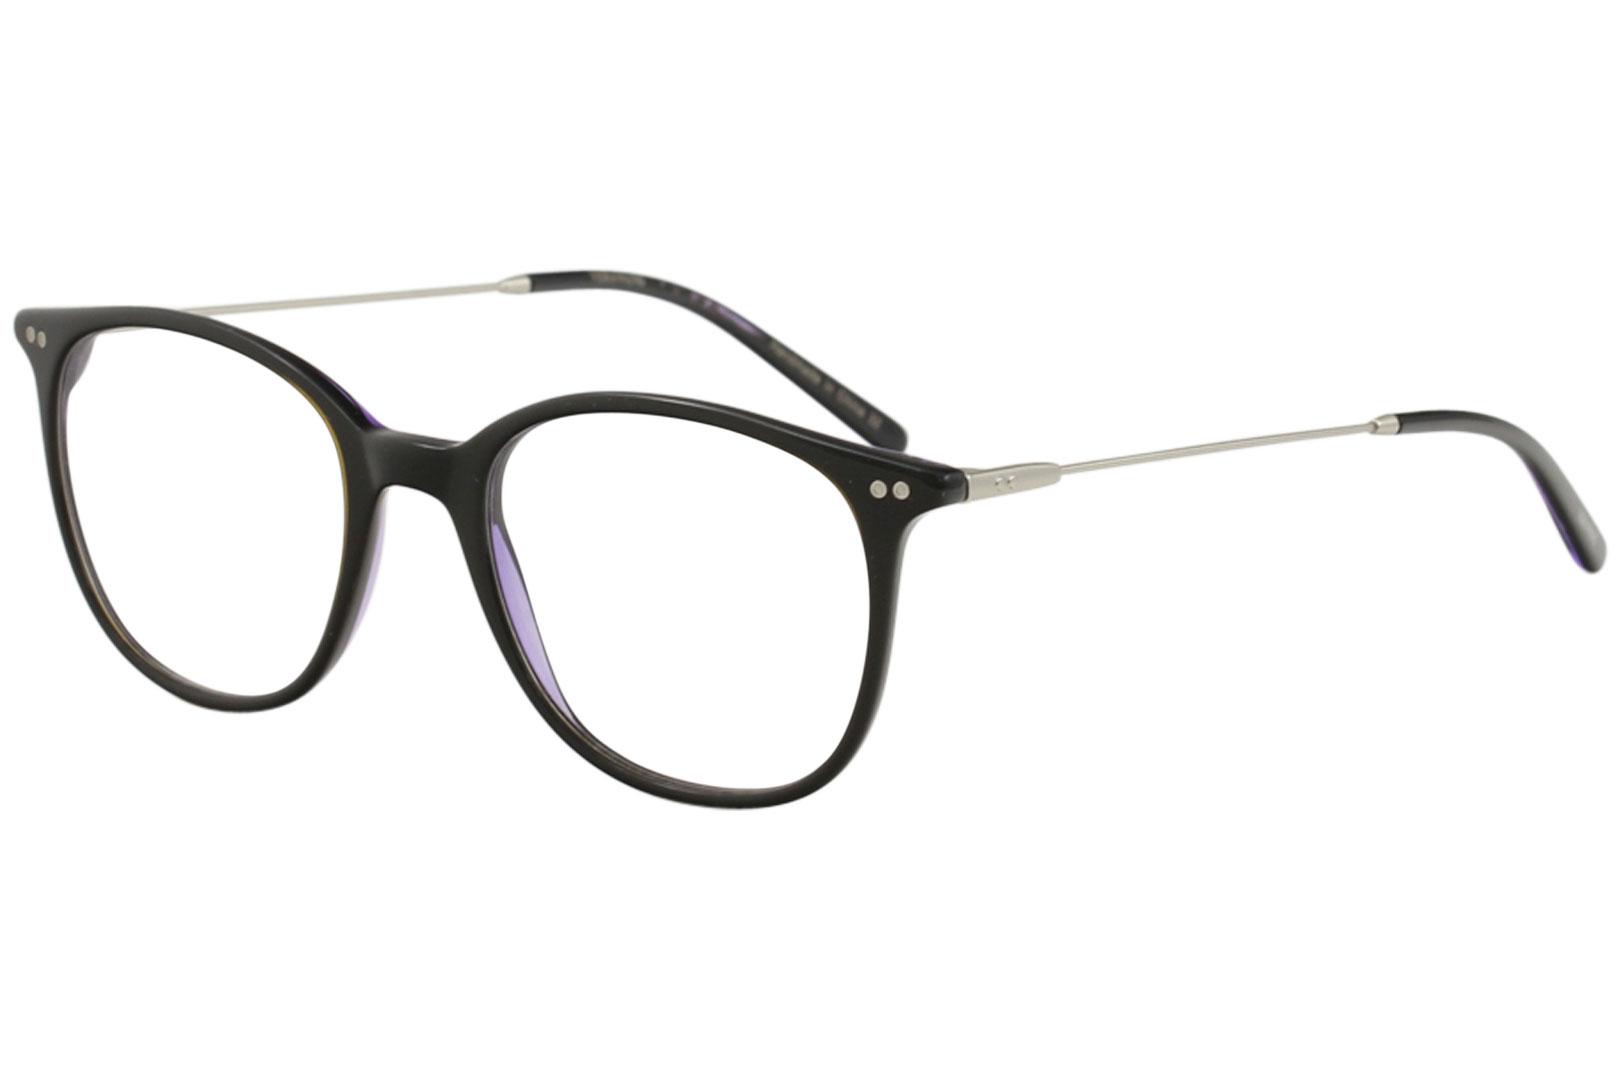 Vera Wang Eyeglasses V508 V/508 Full Rim Optical Frame - Black/Plum   BK - Lens 48 Bridge 19 Temple 140mm